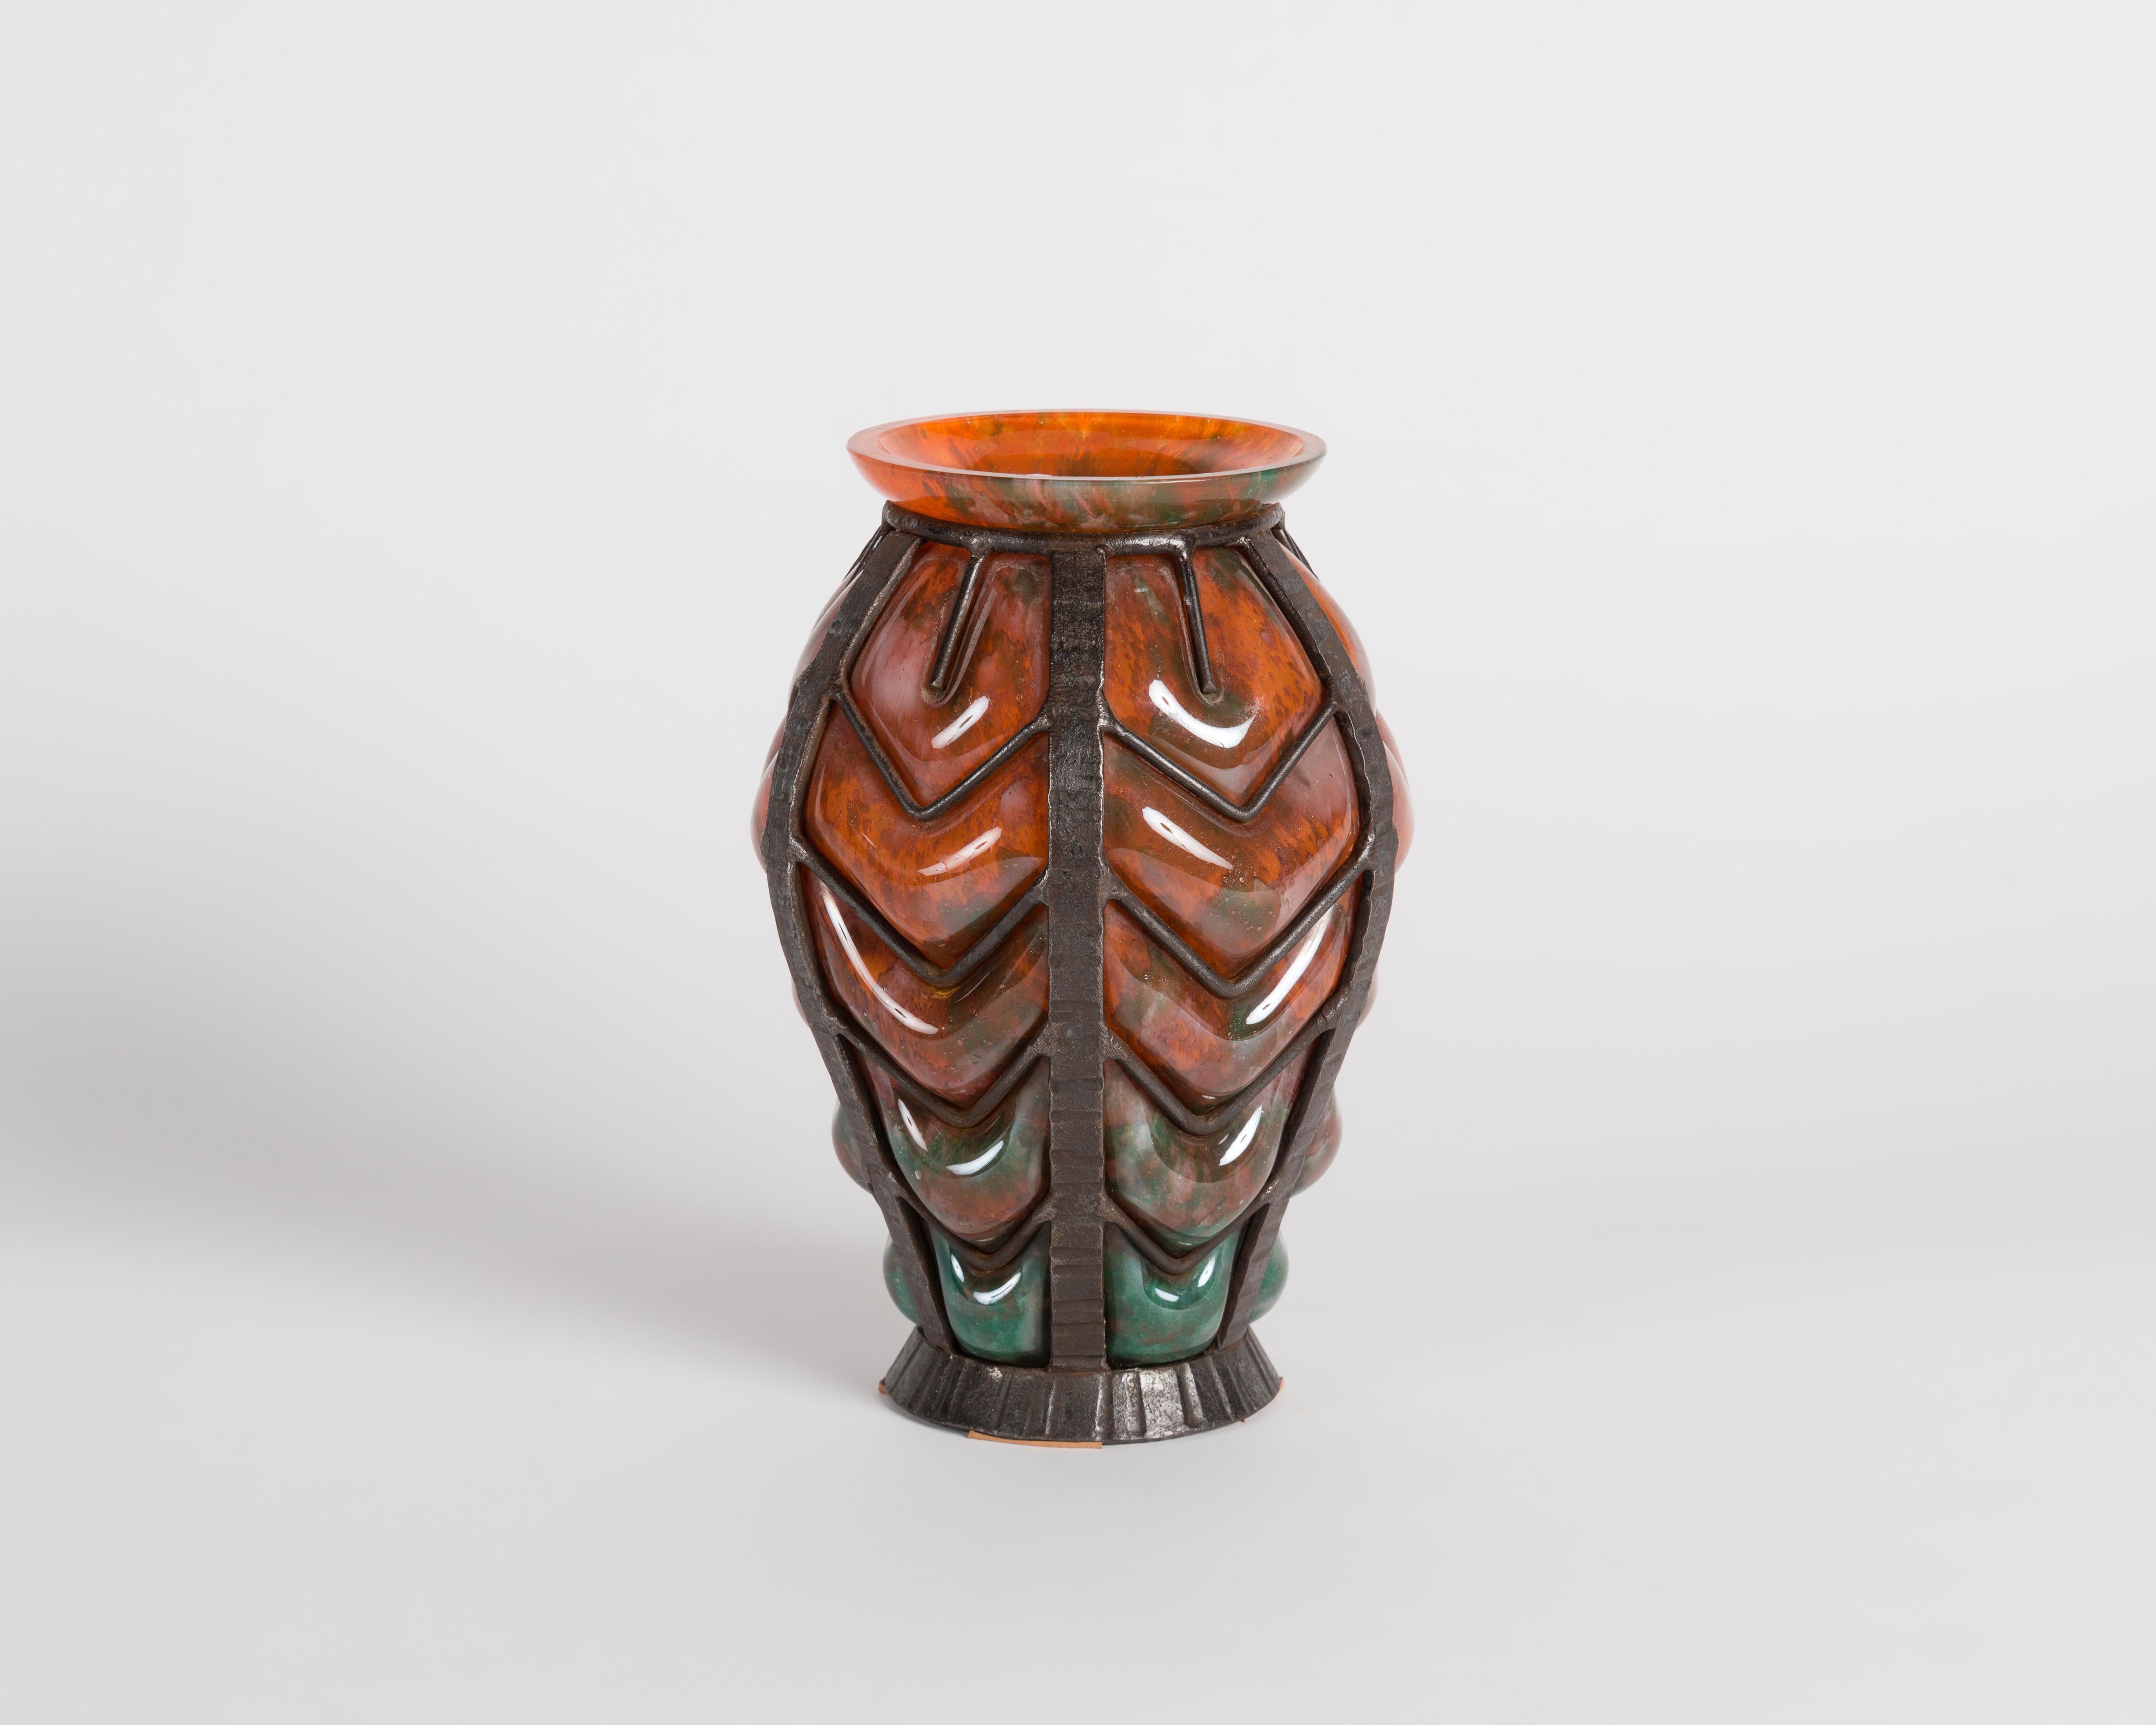 Ce vase du début de la période déco, attribué aux Verreries d'Art Lorrain, présente une couleur orange unique et est entouré d'un extérieur en fer forgé finement nervuré.